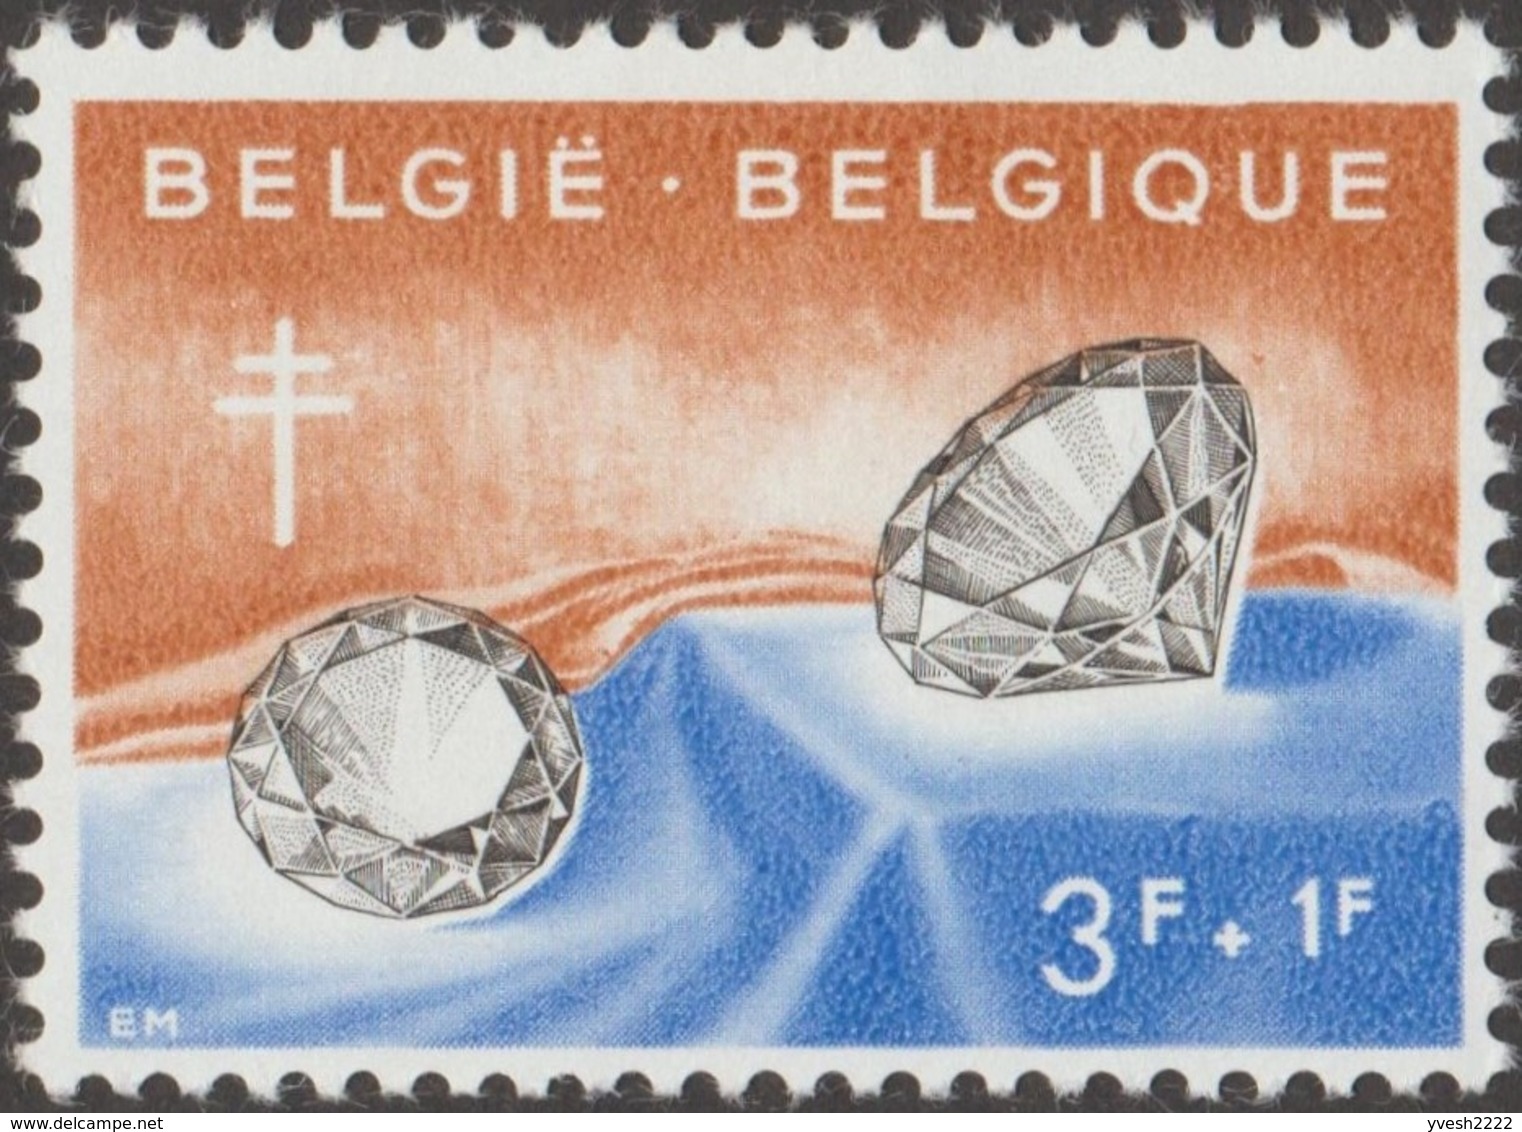 Belgique 1960 COB 1167. 8 épreuves taille-douce. Antituberculeux, métiers d'art. Diamants. Unique